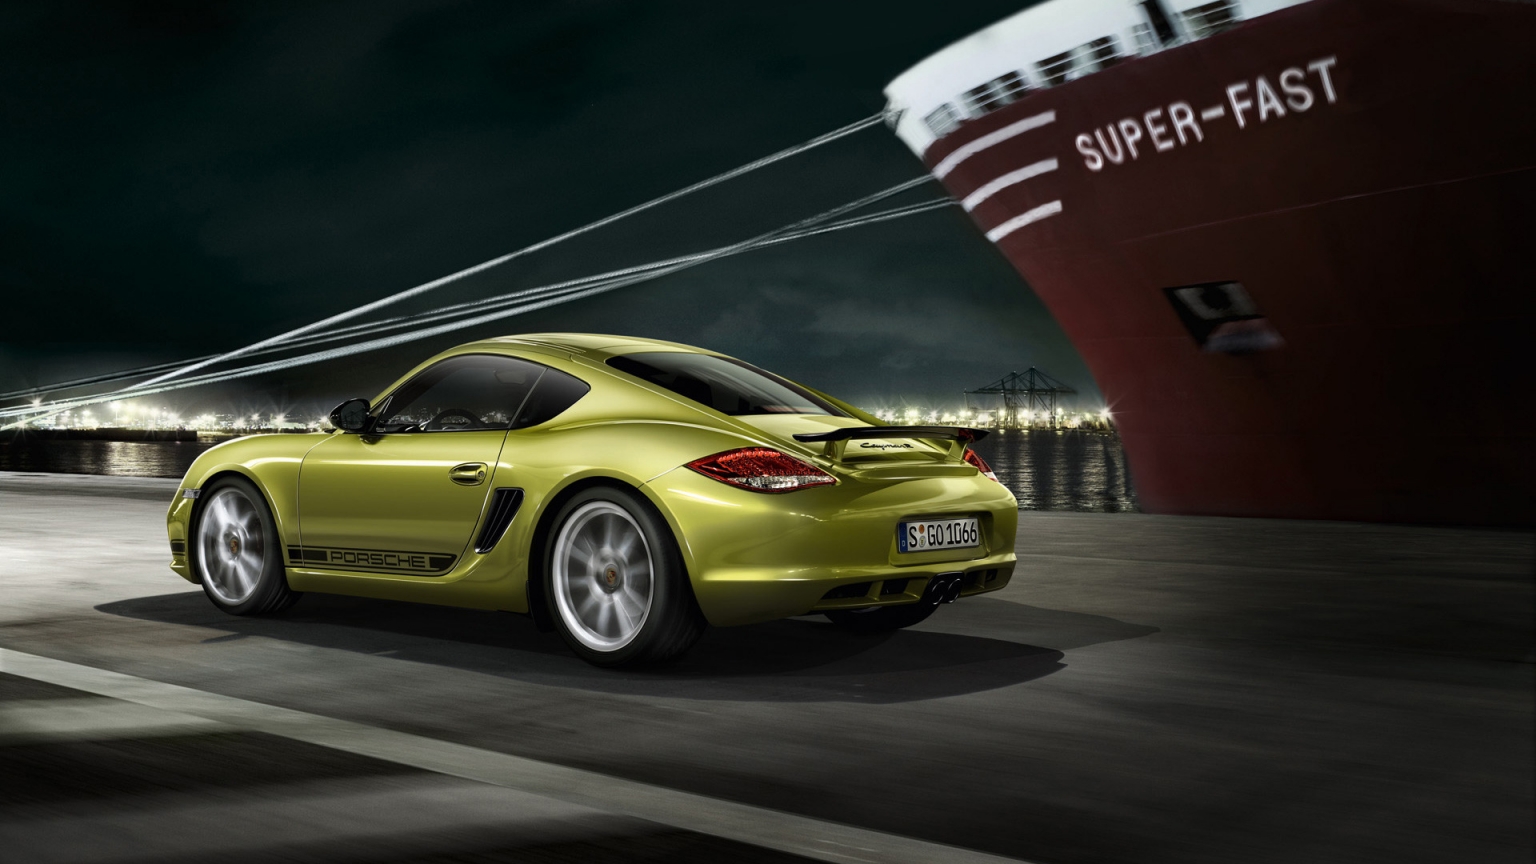 2011 Porsche Cayman R Speed for 1536 x 864 HDTV resolution